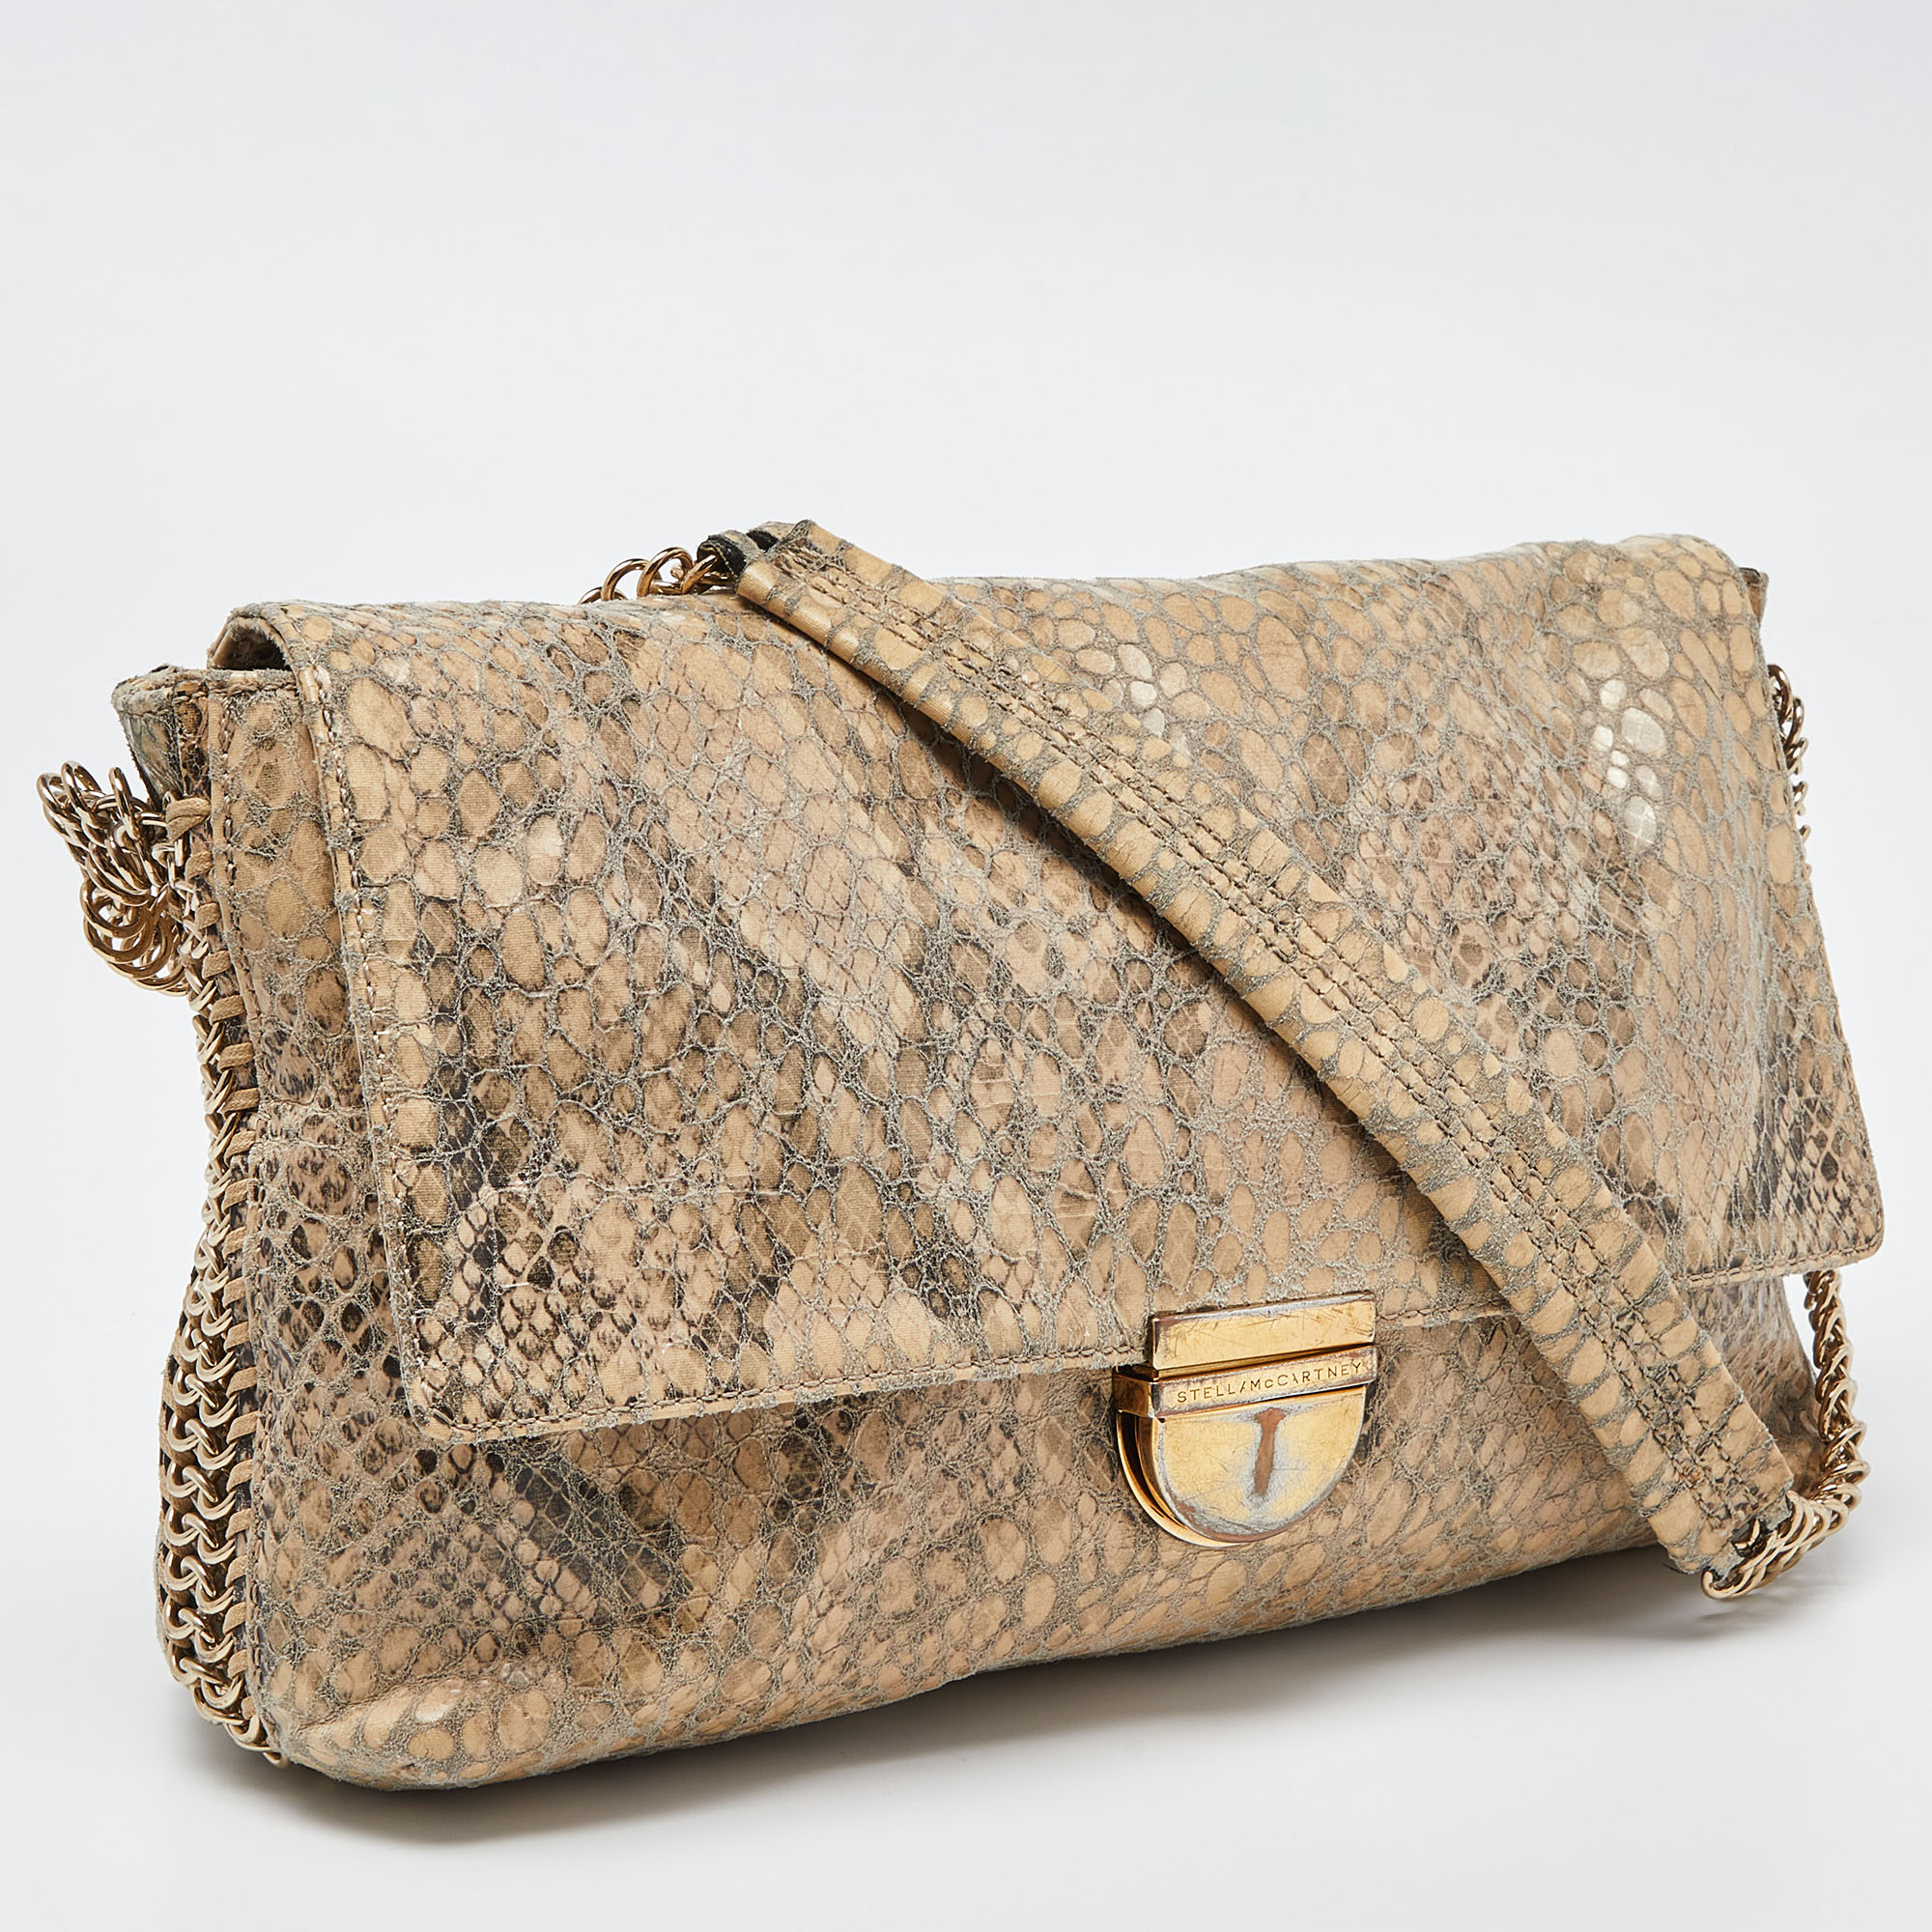 Stella McCartney Beige Python Embossed Leather Falabella Flap Shoulder Bag